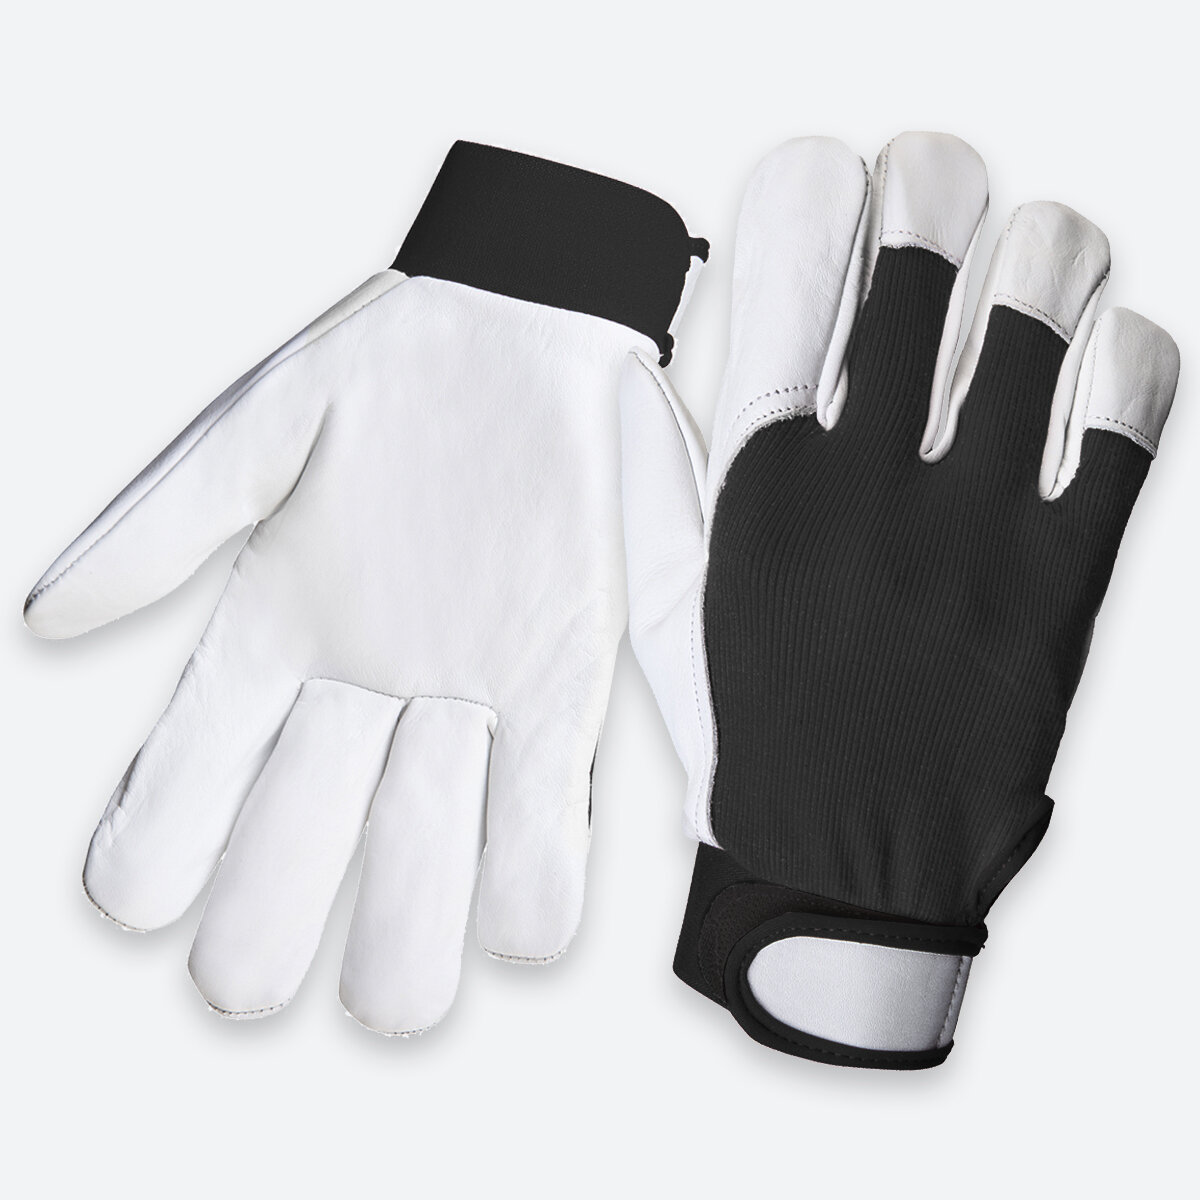 Утеплённые защитные перчатки из кожи класса А и хлопка JLE305 Winter Mechanic, размер L, 1 пара